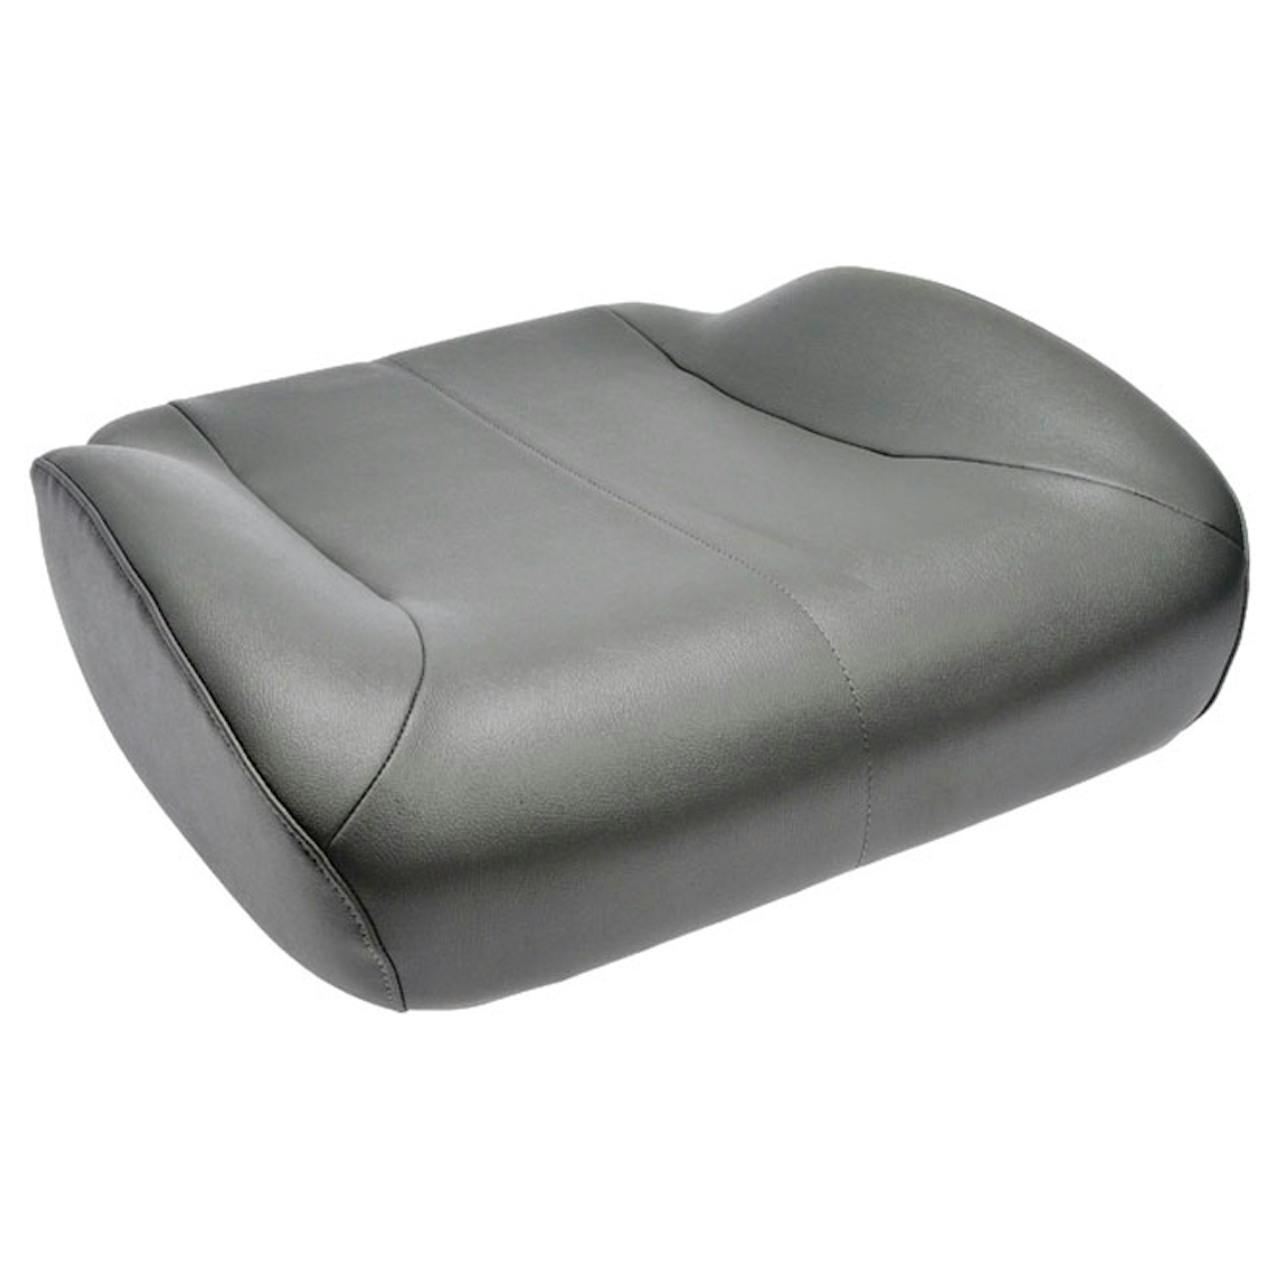 Pilot Seat Cushion Grey Bamboo Fiber, 9385825